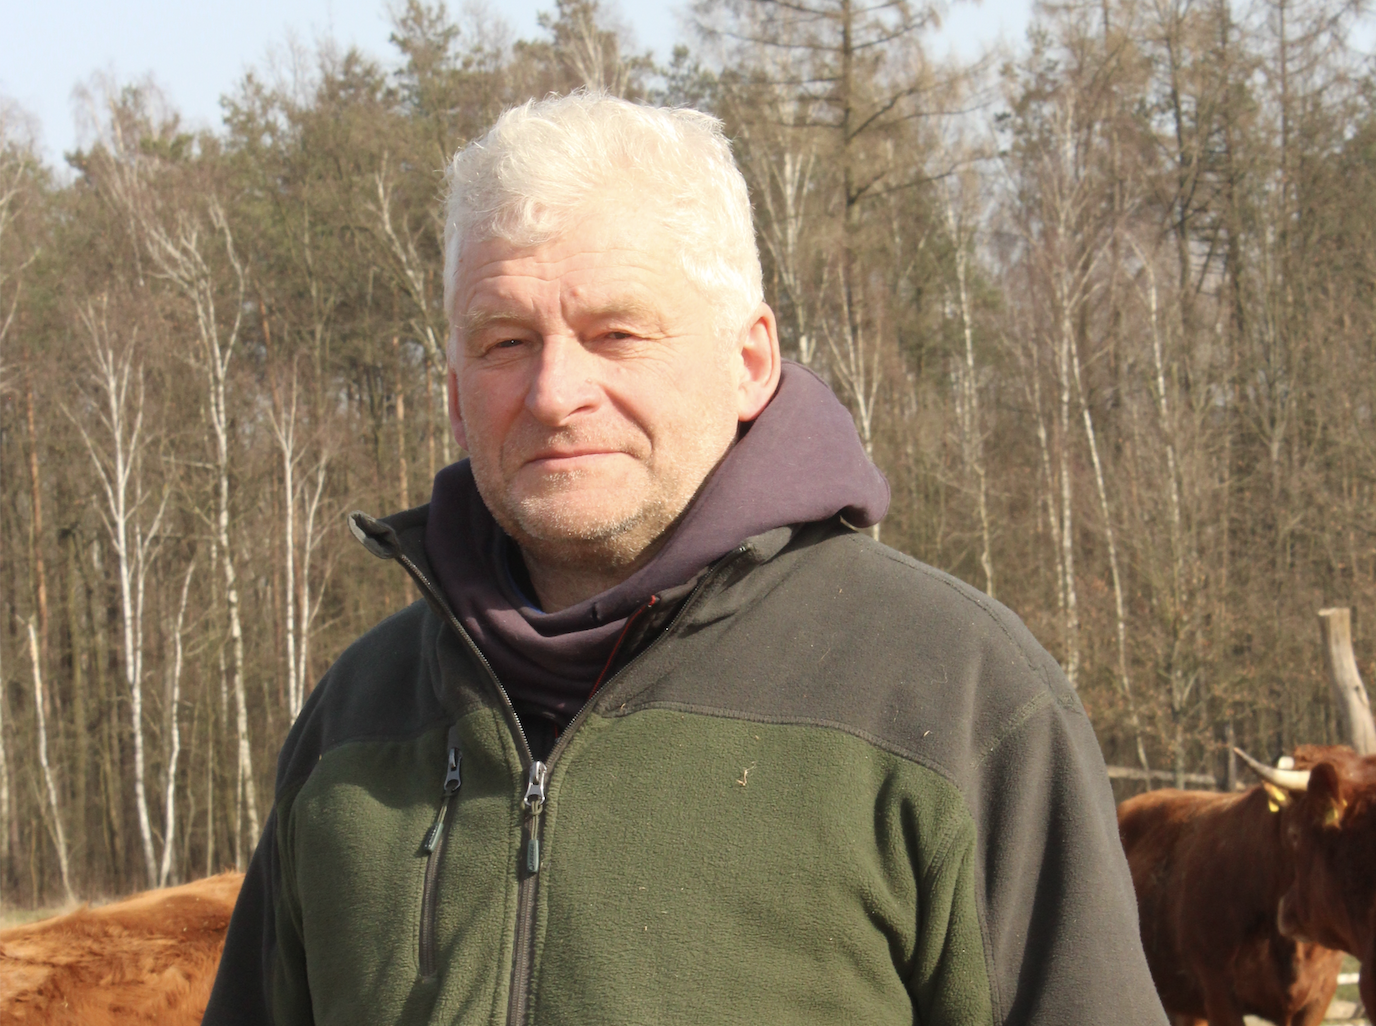 Dariusz Raczko wspólnie z synem Piotrem, prowadzi w miejscowościach Rąbież i Czarnogłów (pow. węgrowski) 2 gospodarstwa ekologiczne o łącznej powierzchni około 150 ha. Stado bydła mięsnego liczy 200 sztuk. 120 sztuk to krowy mamki, 40 sztuk jałówki, a pozostałą część stanowią buhaje rozpłodowe oraz cielęta. Urodzone w gospodarstwie buhaje po ukończeniu 6 miesięcy życia sprzedawane są do dalszej hodowli. Jałówki w połowie pozostawiane są na remont i powiększenie stada, a pozostałe sztuki sprzedawane są do dalszej hodowli. Hodowcy na około 40 ha wysiewają owies, a pozostałe grunty to użytki zielone. Wśród nich są trawy, koniczyna i lucerna w siewie czystym oraz w mieszankach z trawami. Od dwóch lat Dariusz Raczko należy do Polskiego Związku Hodowców i Producentów Bydła Mięsnego.